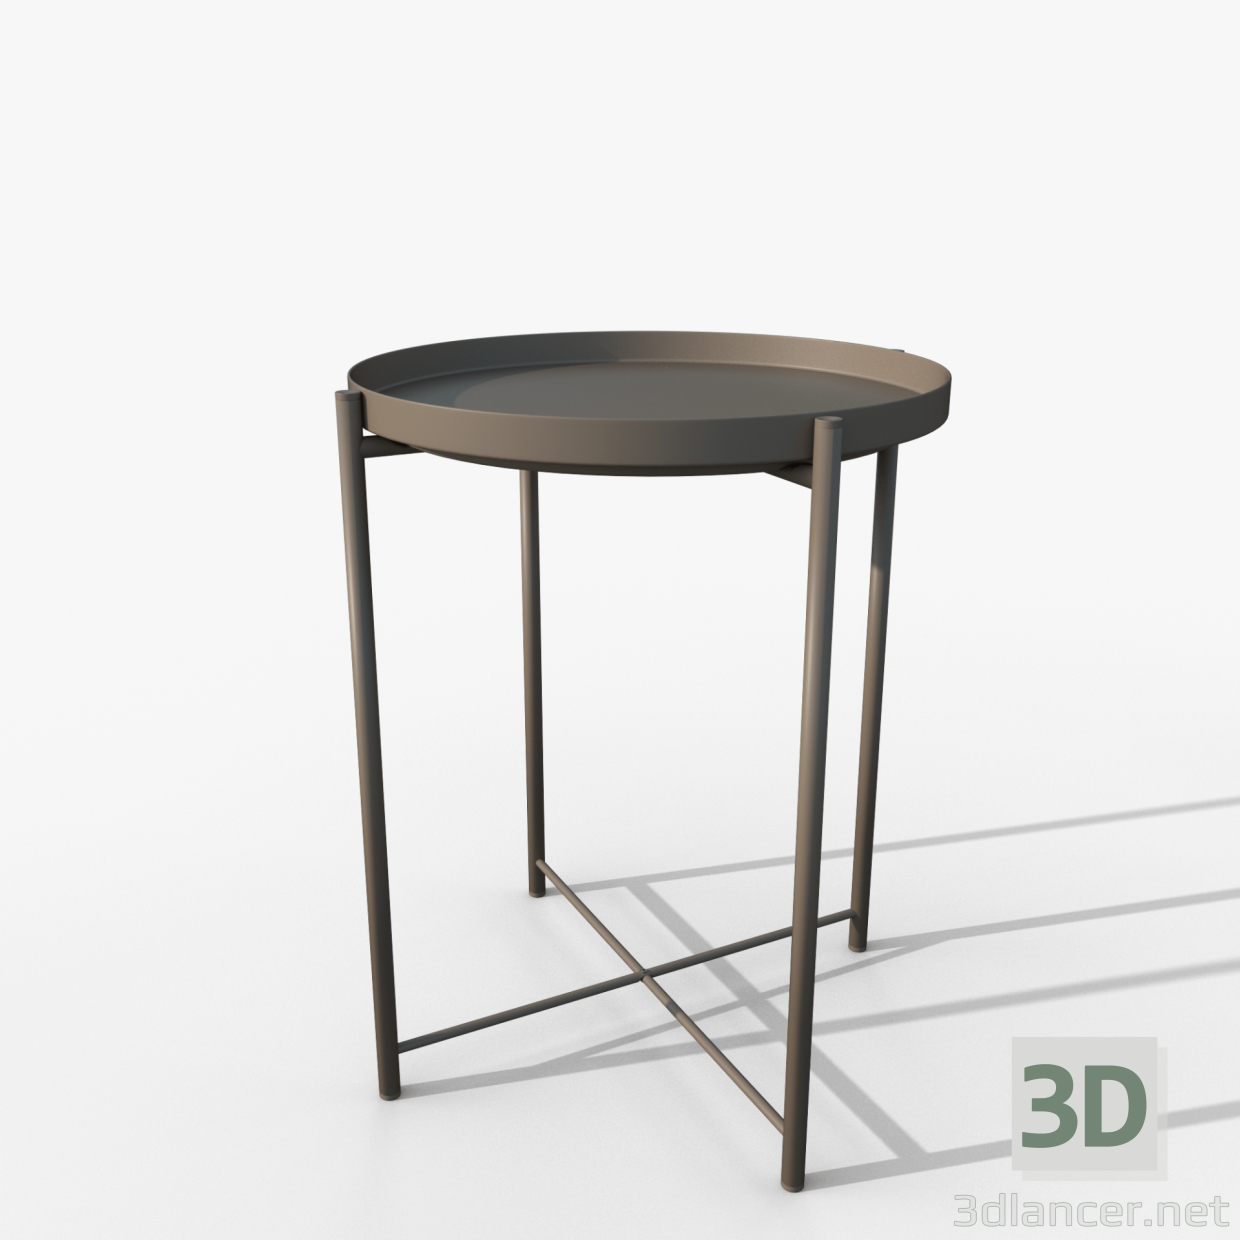 Gladom Tisch grau IKEA 3D-Modell kaufen - Rendern